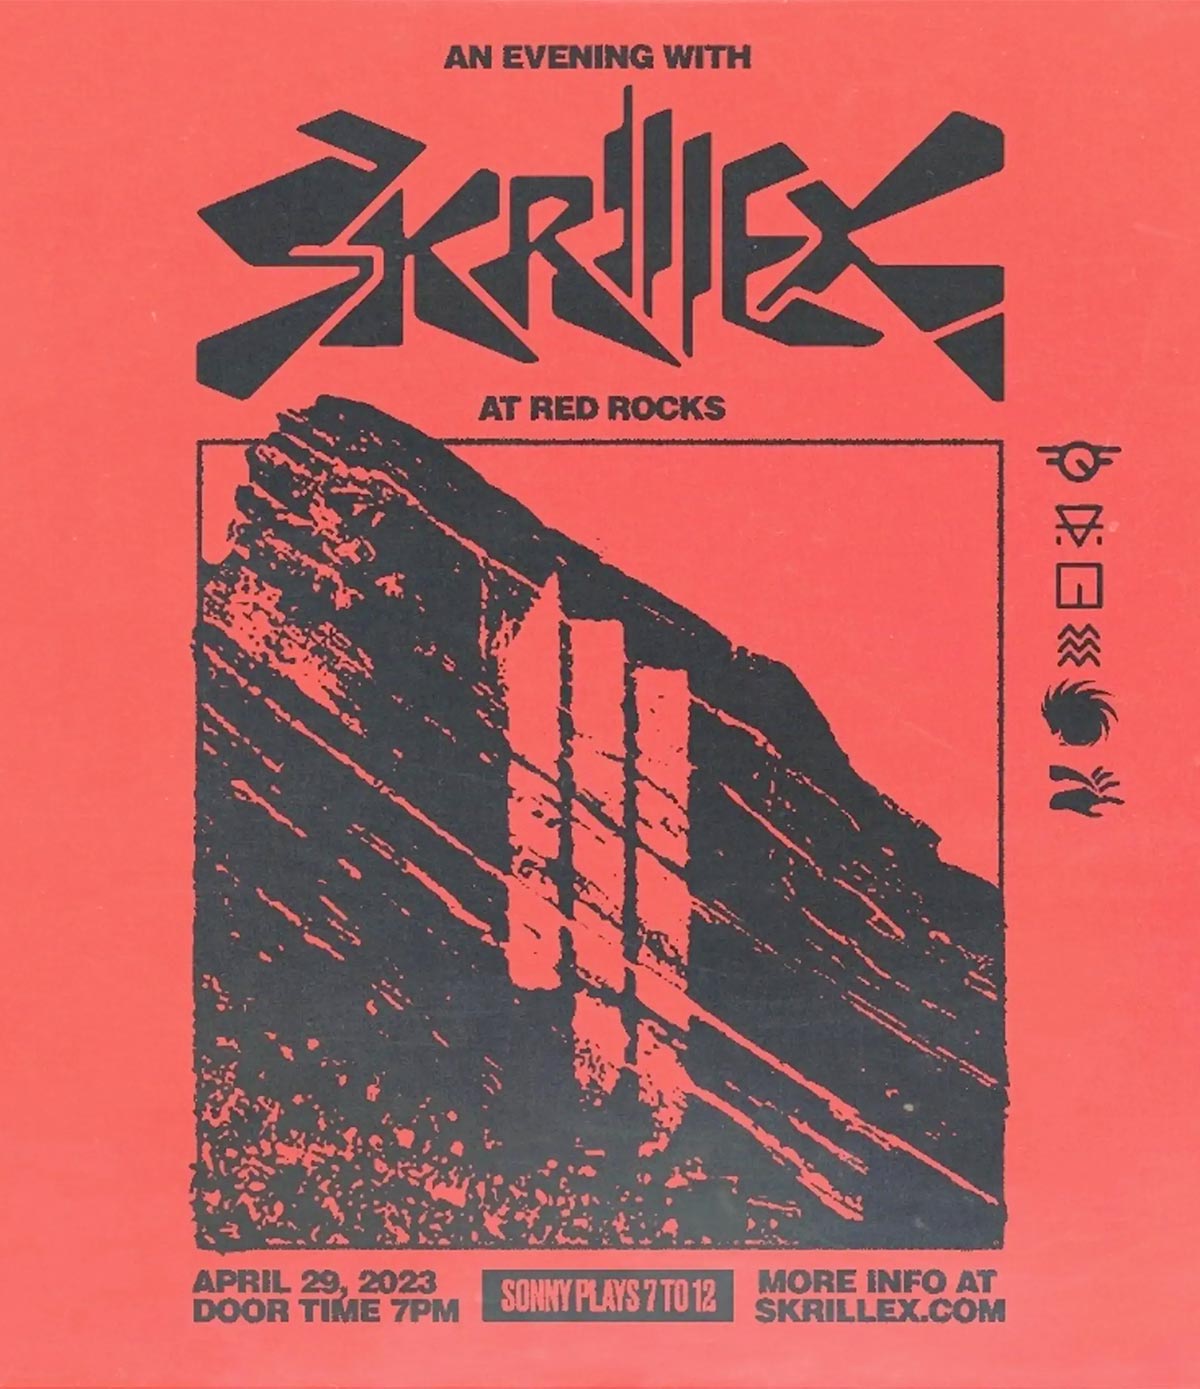 skrillex-red-rocks-2023-poster-oz-edm